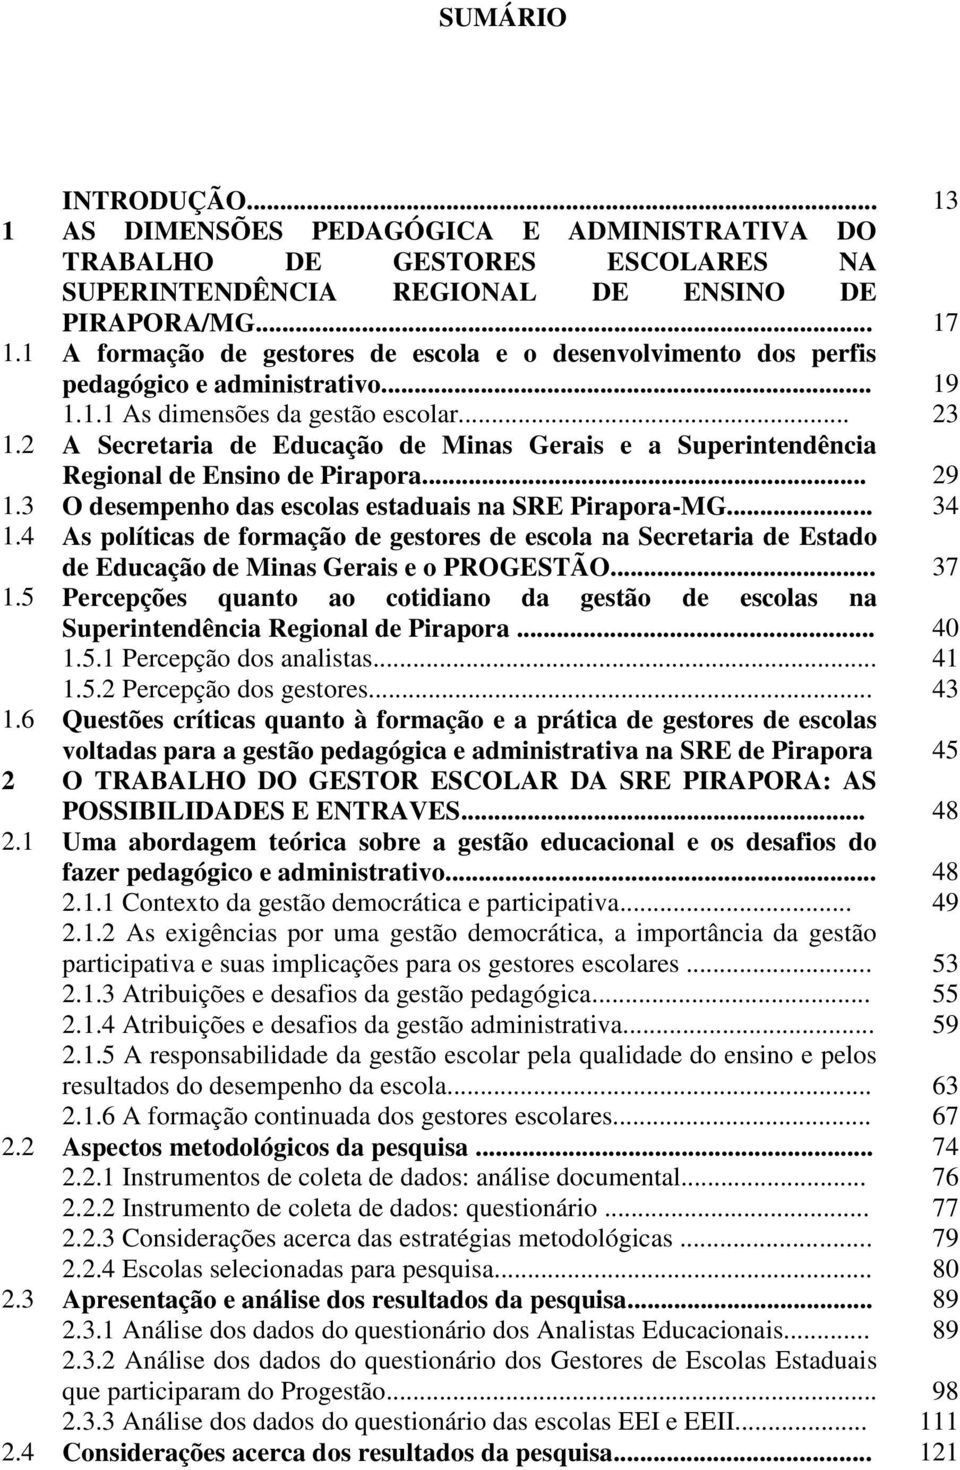 2 A Secretaria de Educação de Minas Gerais e a Superintendência Regional de Ensino de Pirapora... 29 1.3 O desempenho das escolas estaduais na SRE Pirapora-MG... 34 1.